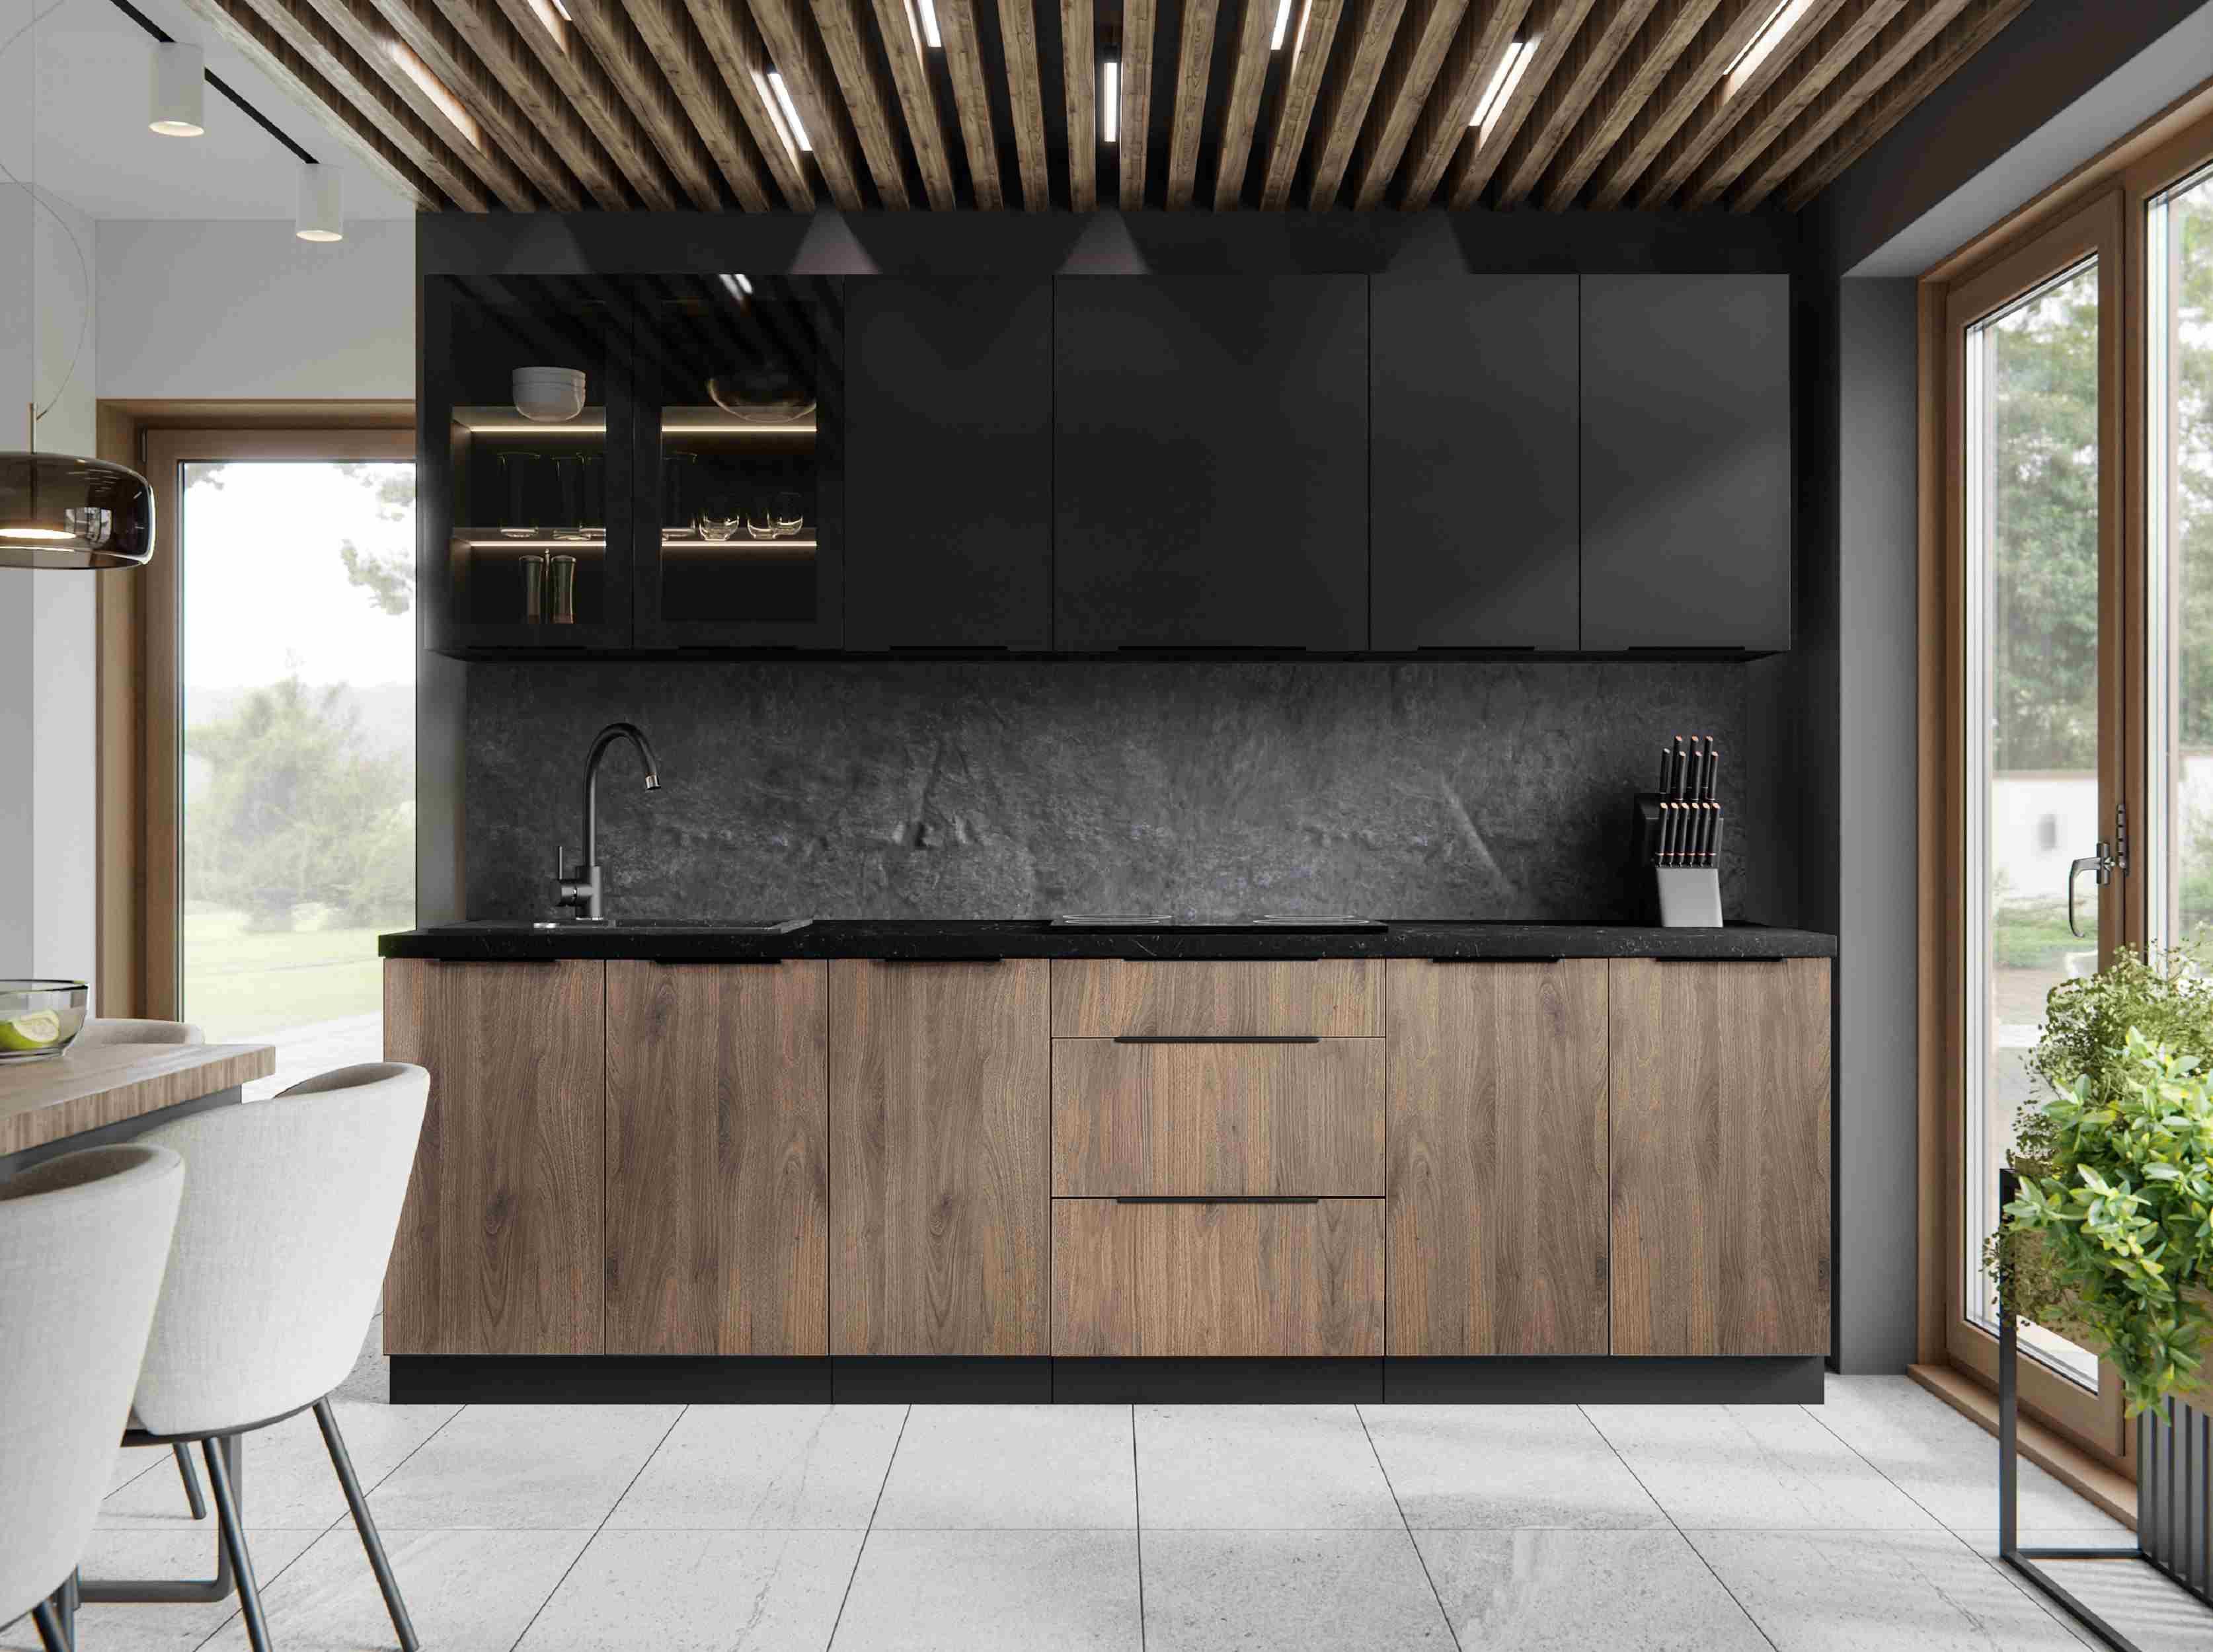 Furnix Küchenzeile Linaris-Iconica Einbau-Küche 260 cm Küchenmöbel Vitrine schwarz/braun, 260x85,8x60 cm, Höhe oben je nach Montage, Design & Funktionalität